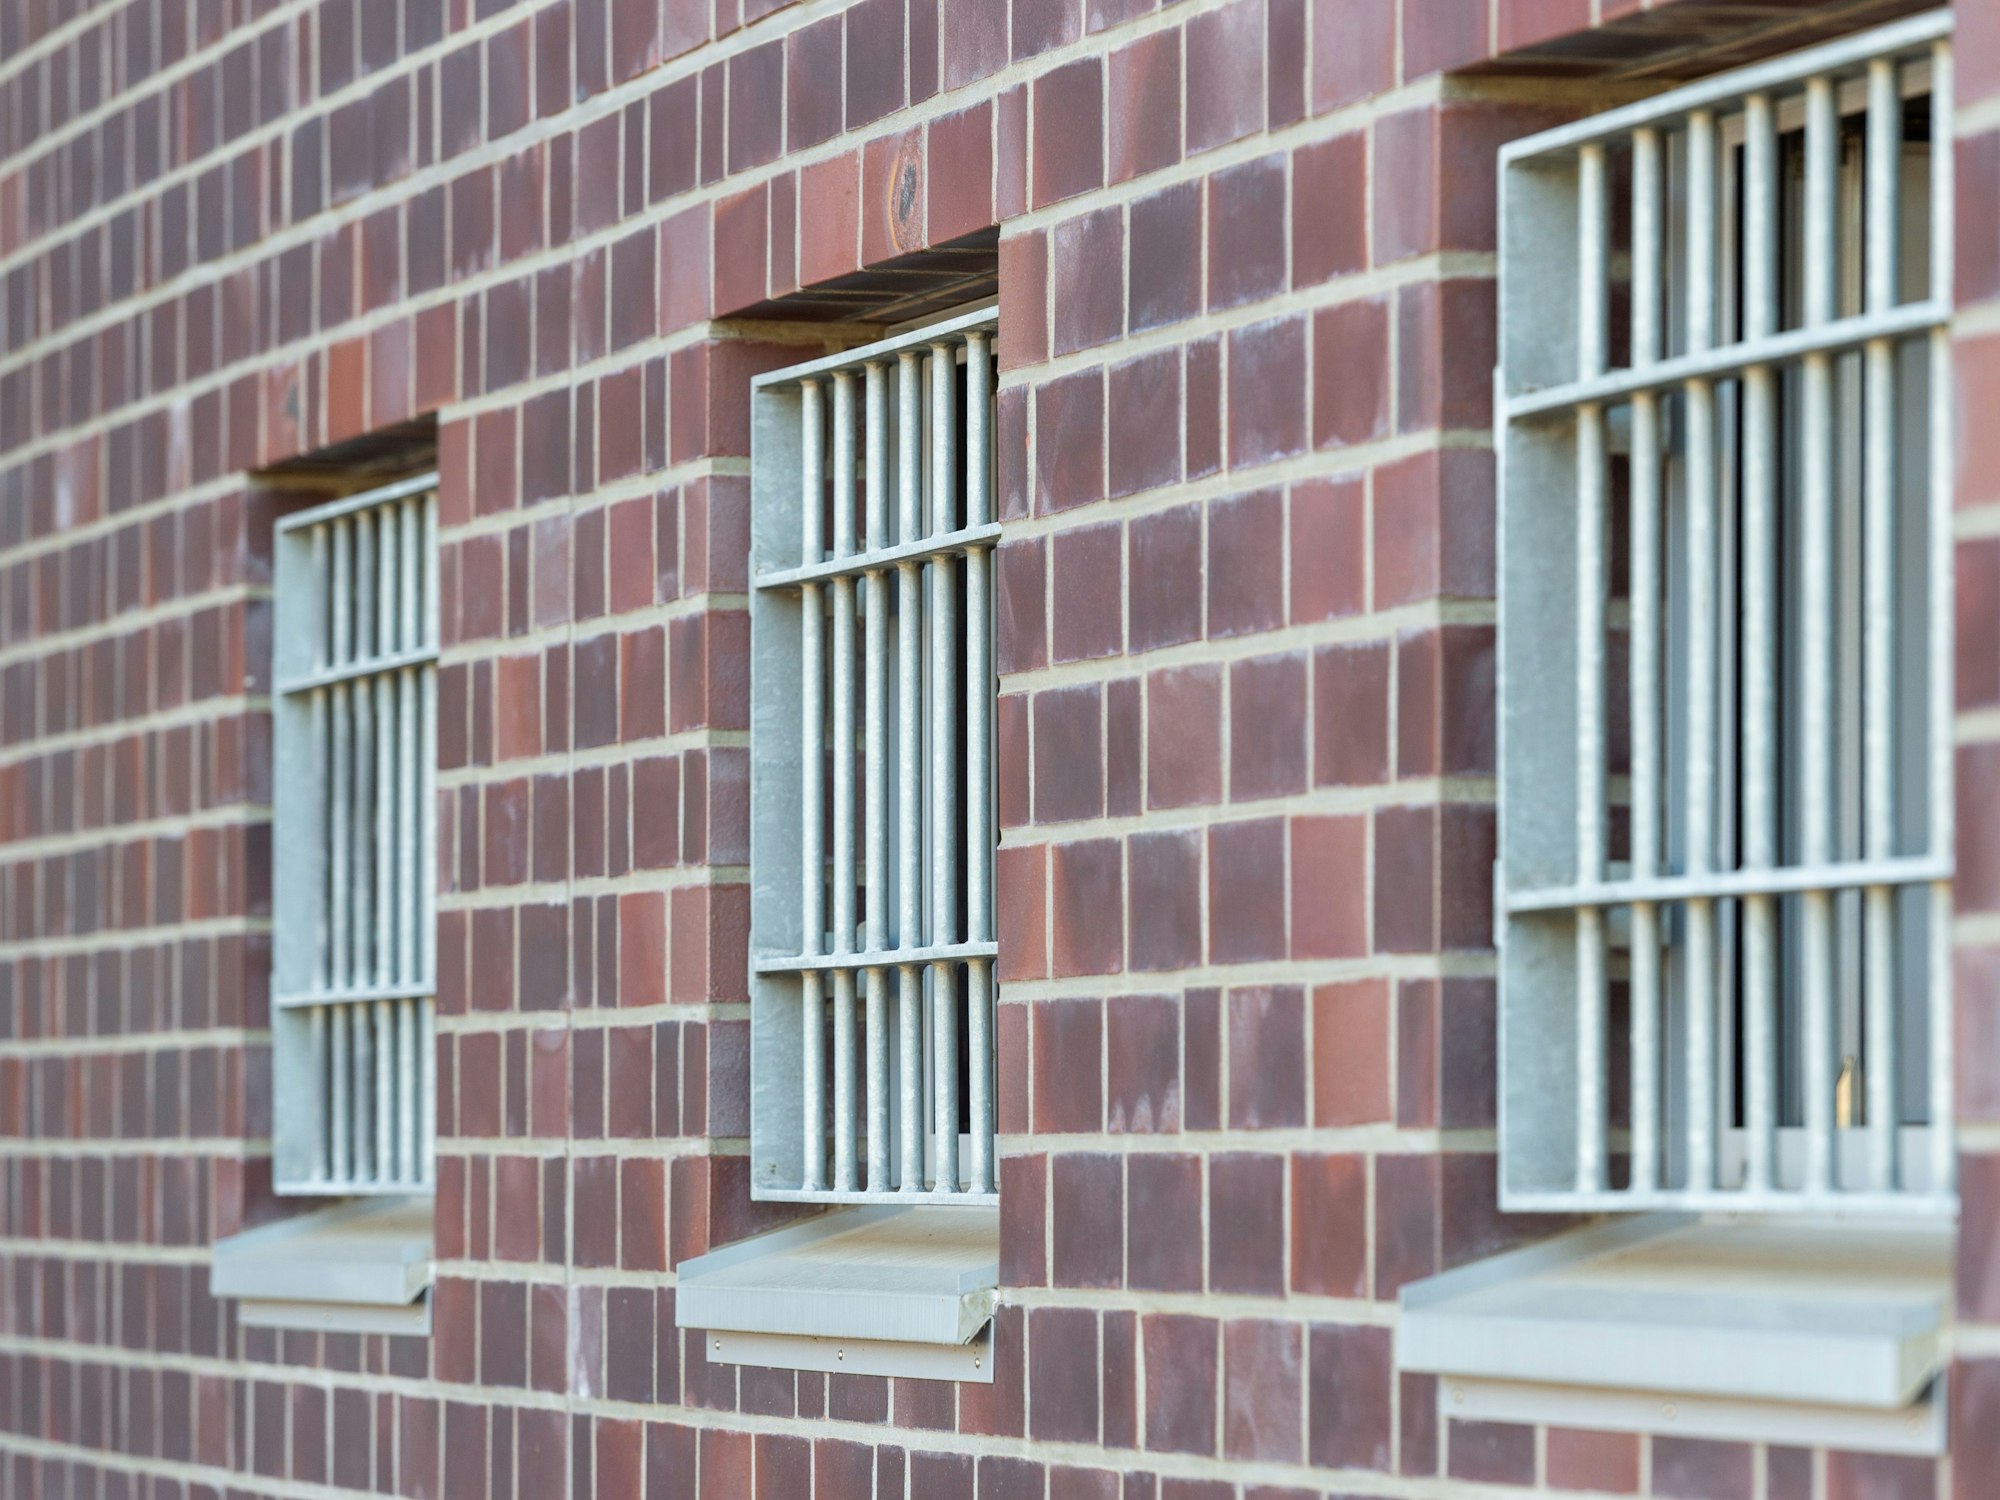 Die Fenster einer Justizvollzugsanstalt sind vergittert, hier im August 2018 in Düsseldorf.